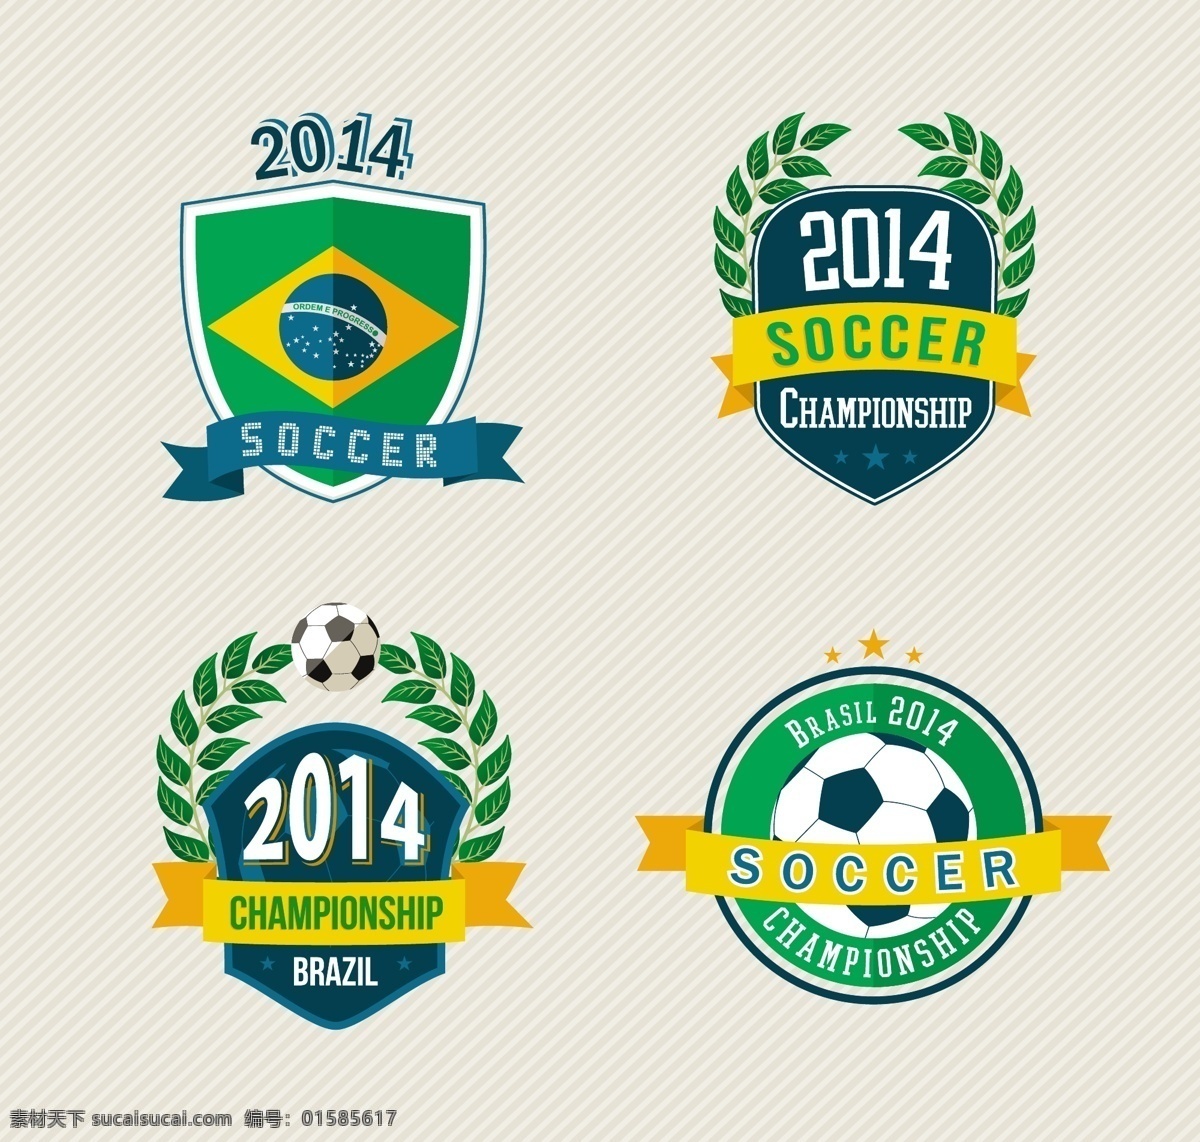 2014 巴西 世界杯 图标 足球徽标 足球 体育运动 足球主题 生活百科 矢量素材 白色